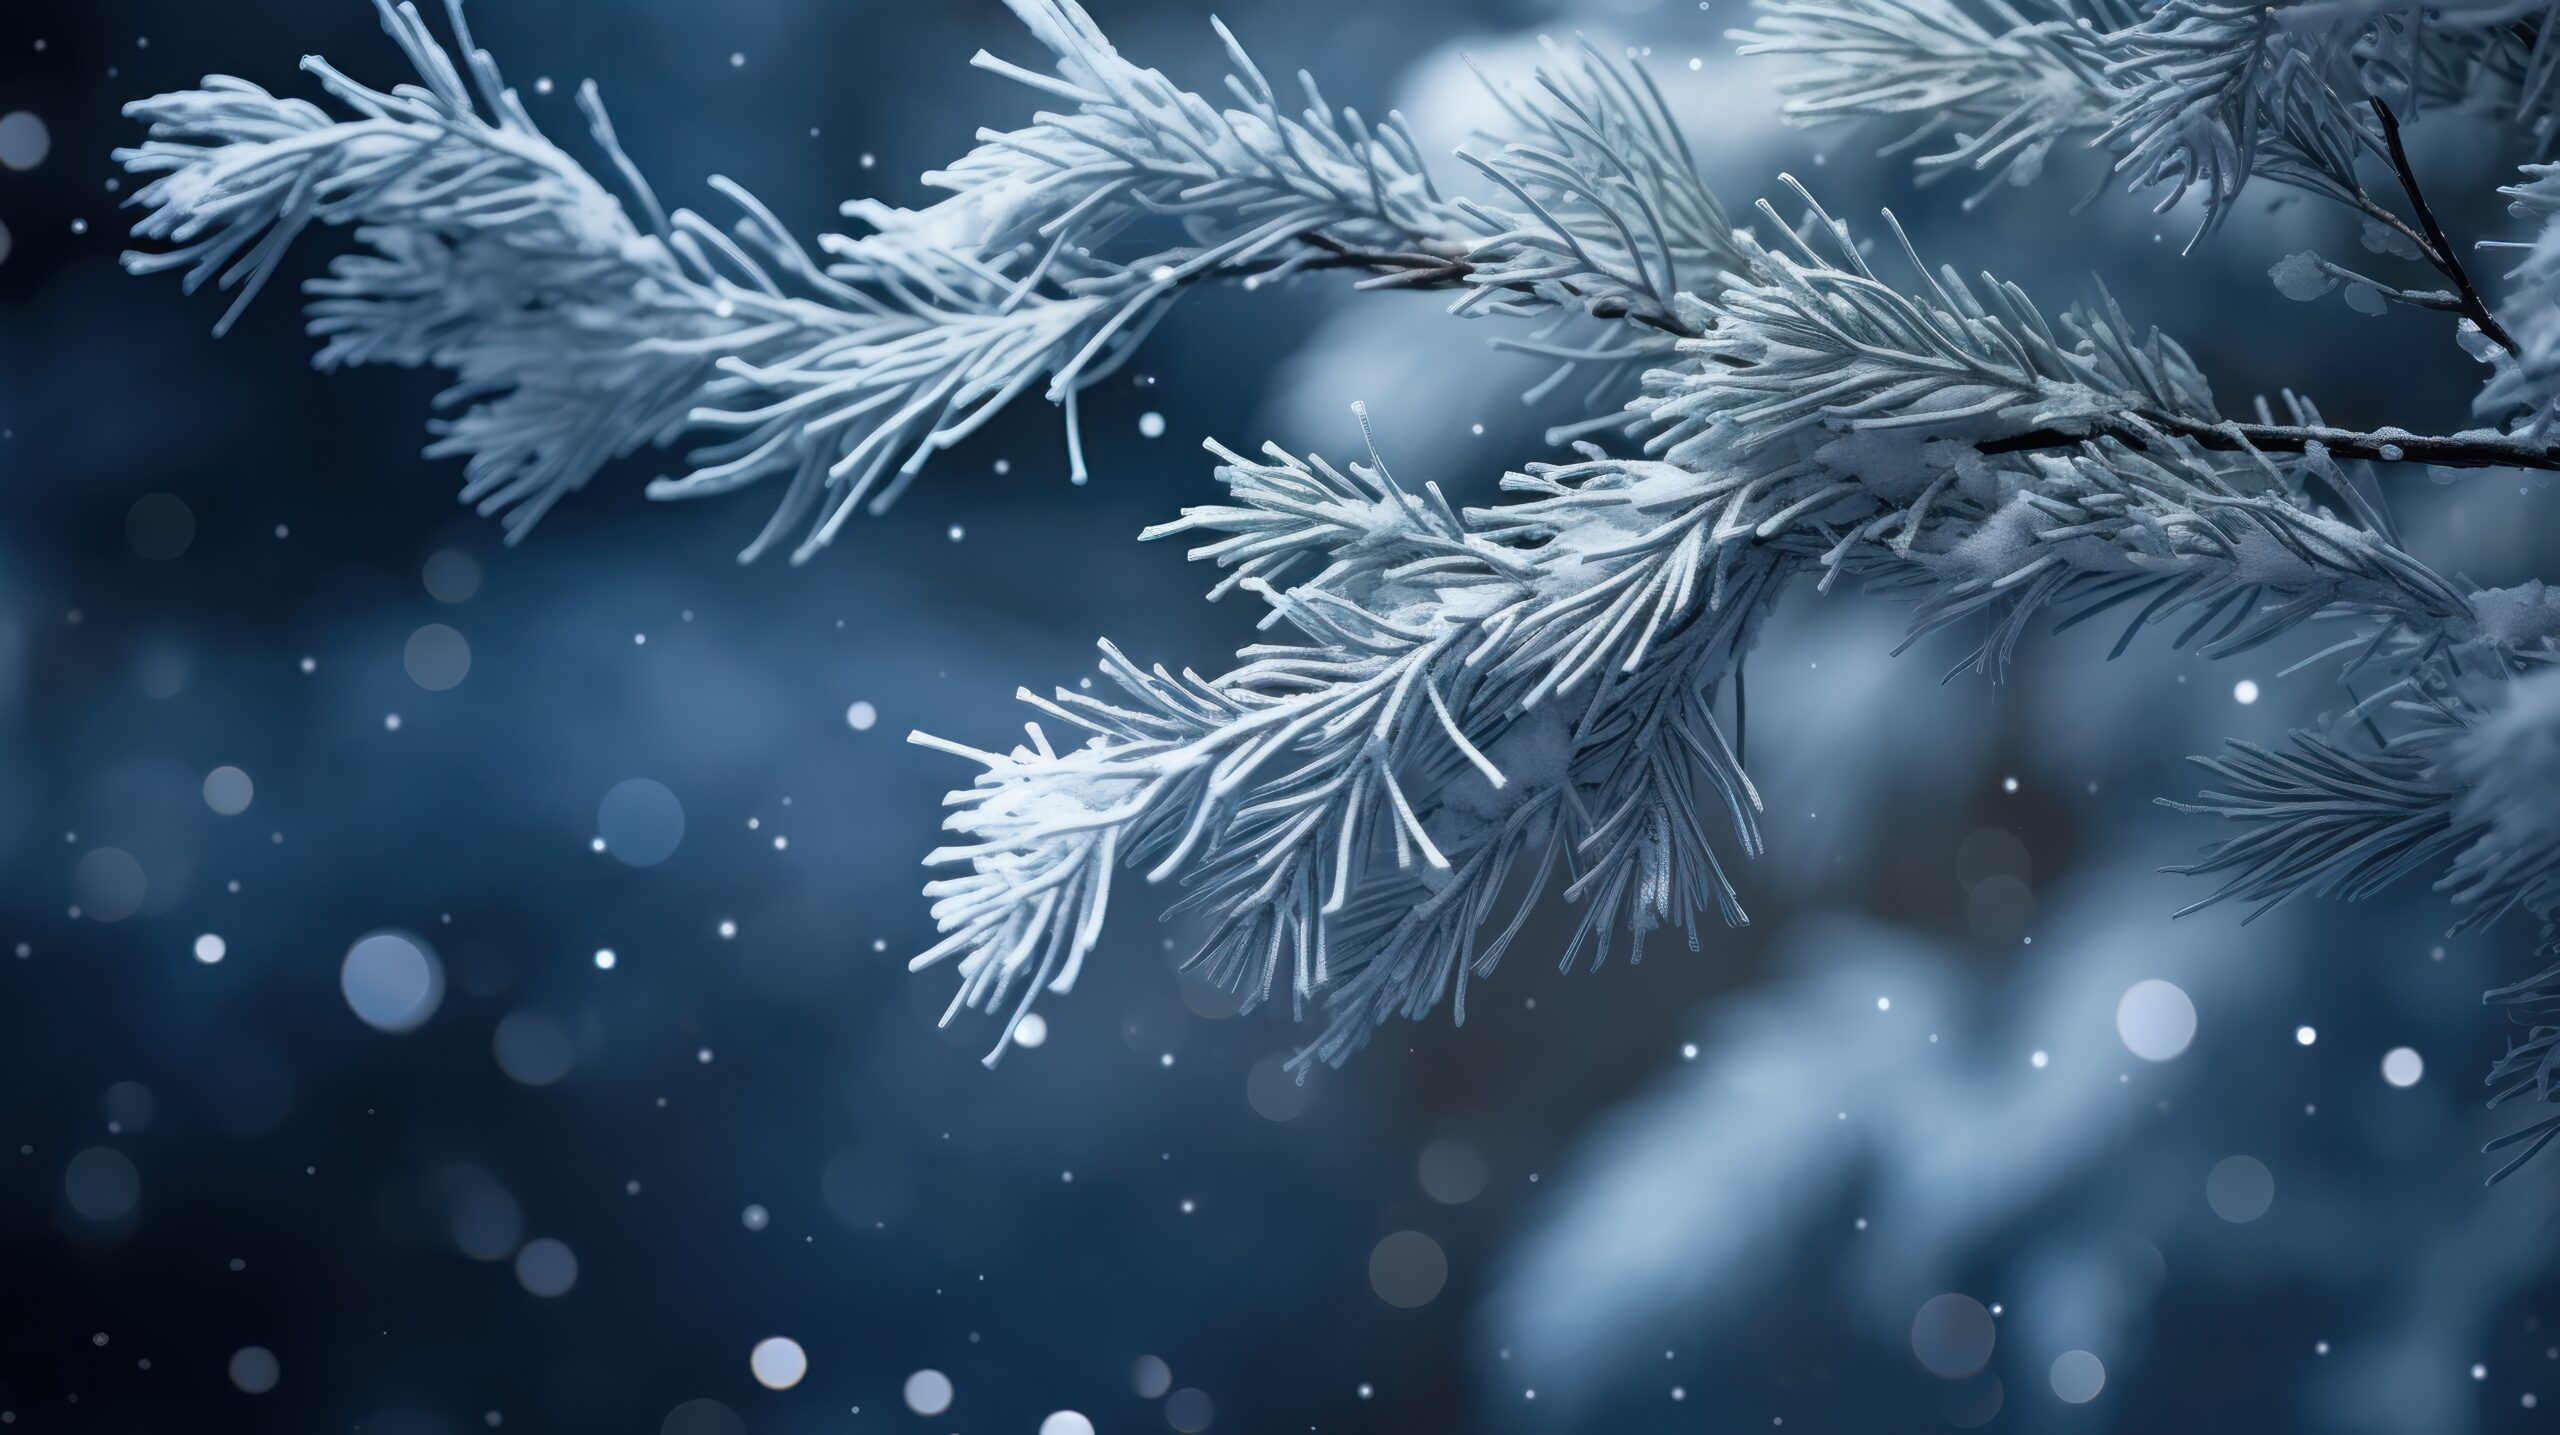 Zdjęcie: zbliżenie na gałązkę choinki pokrytą śniegiem. Zdjęcie utrzymane w niebieskiej kolorystyce.